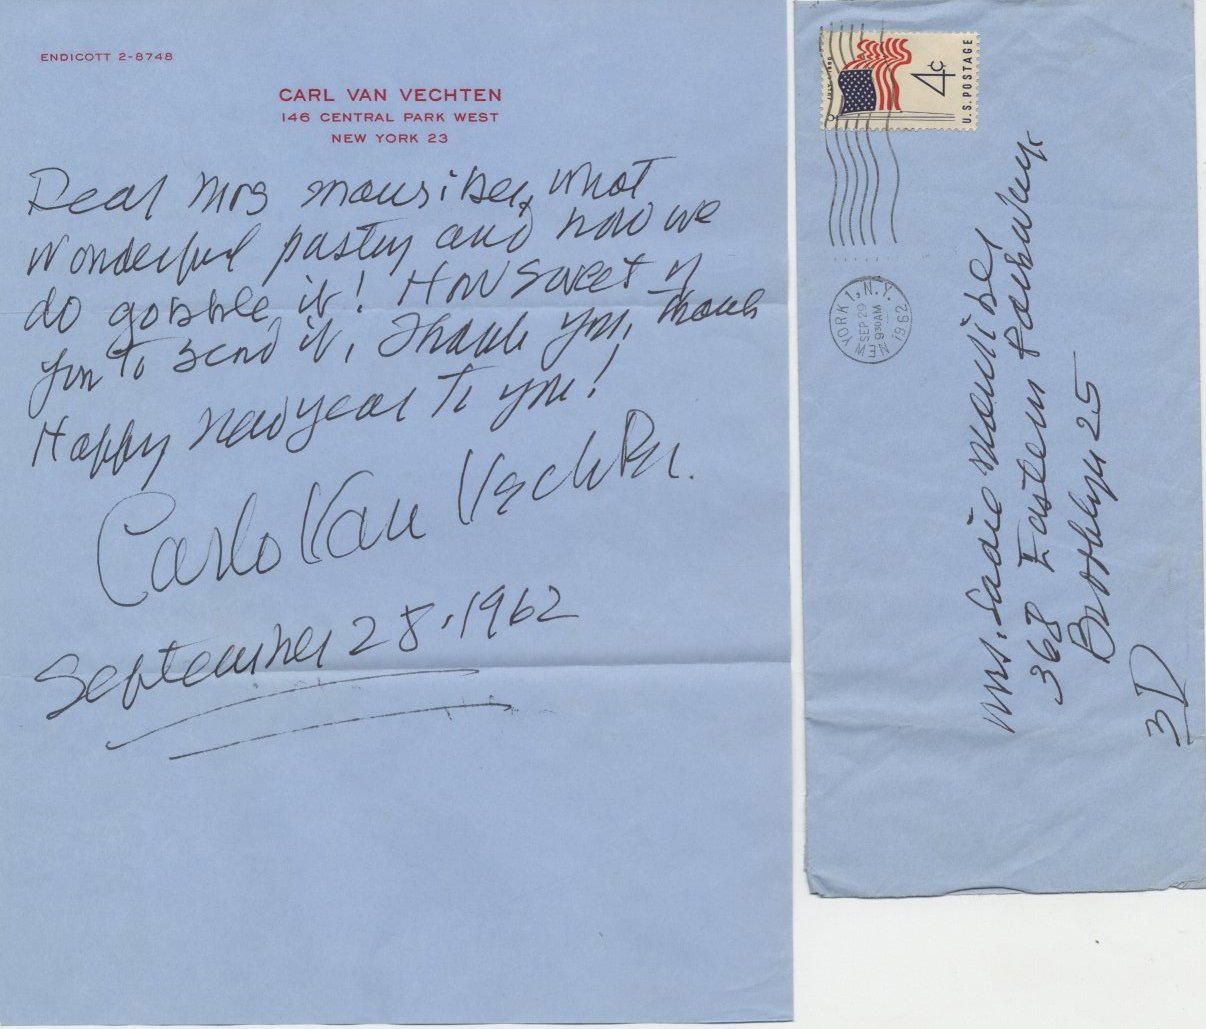 Carl Van Vechten - Autographed letter signed by photographer Carl Van Vechten to Mrs. (Saul) Mauriber